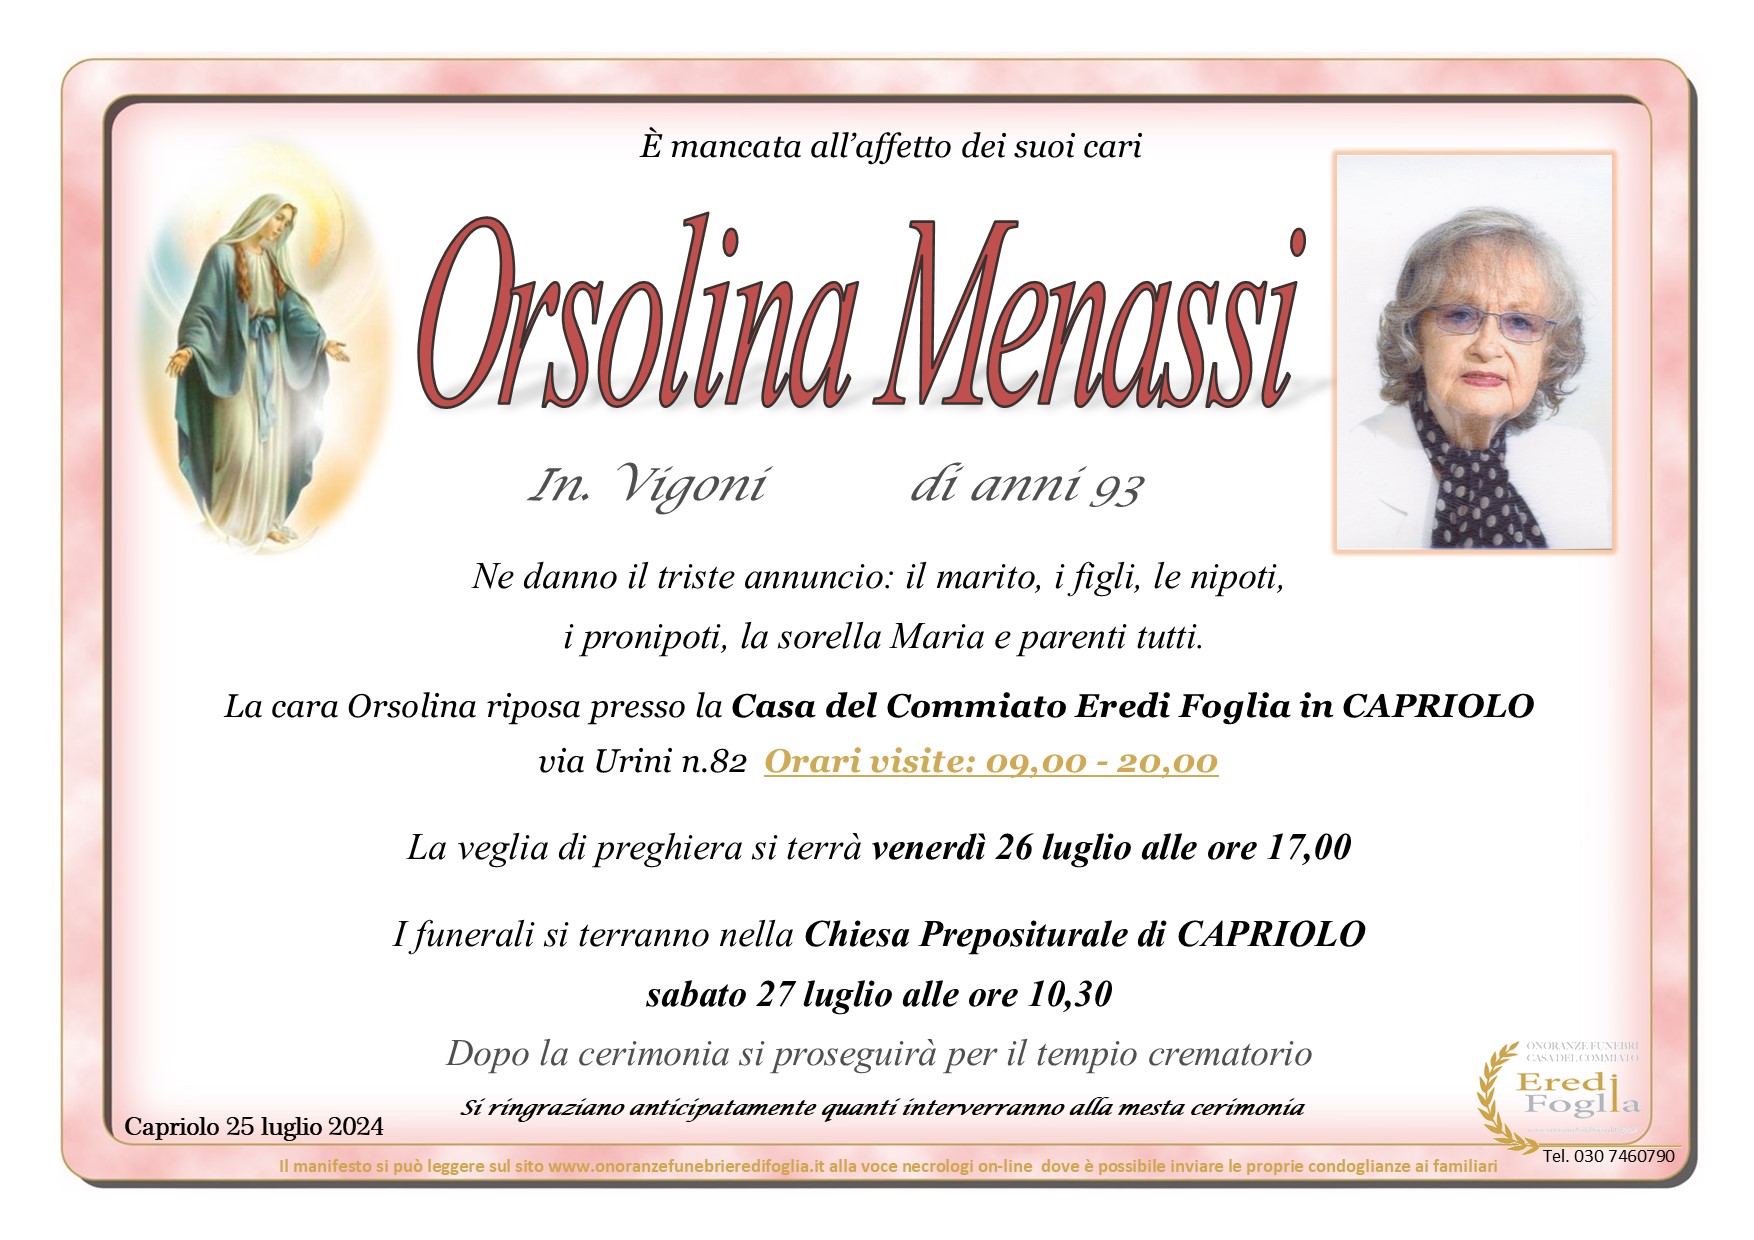 Orsolina Menassi